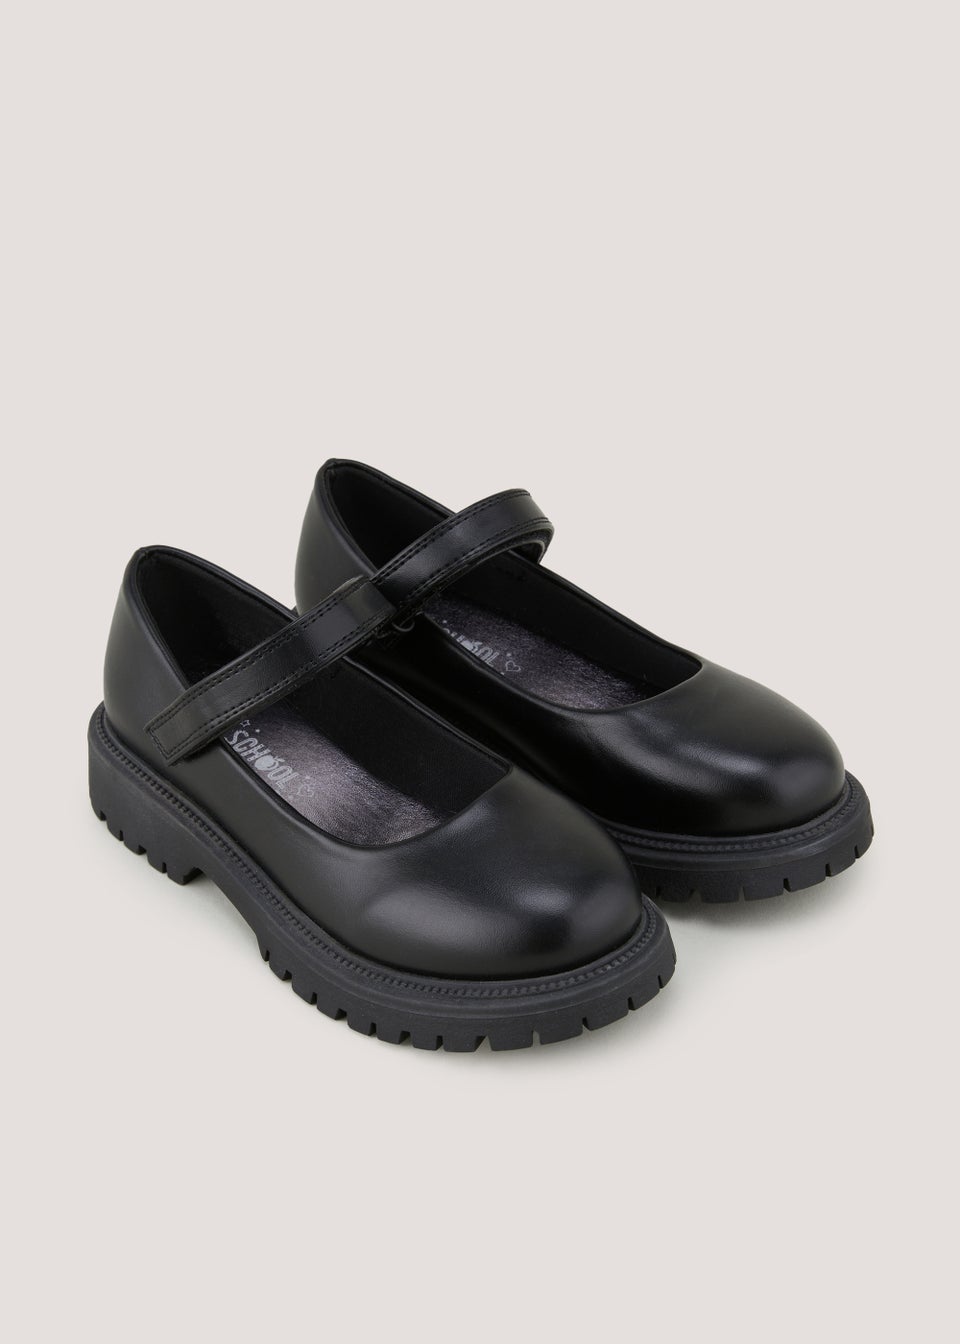 Girls Black School Shoes (Younger 10-Older 5)